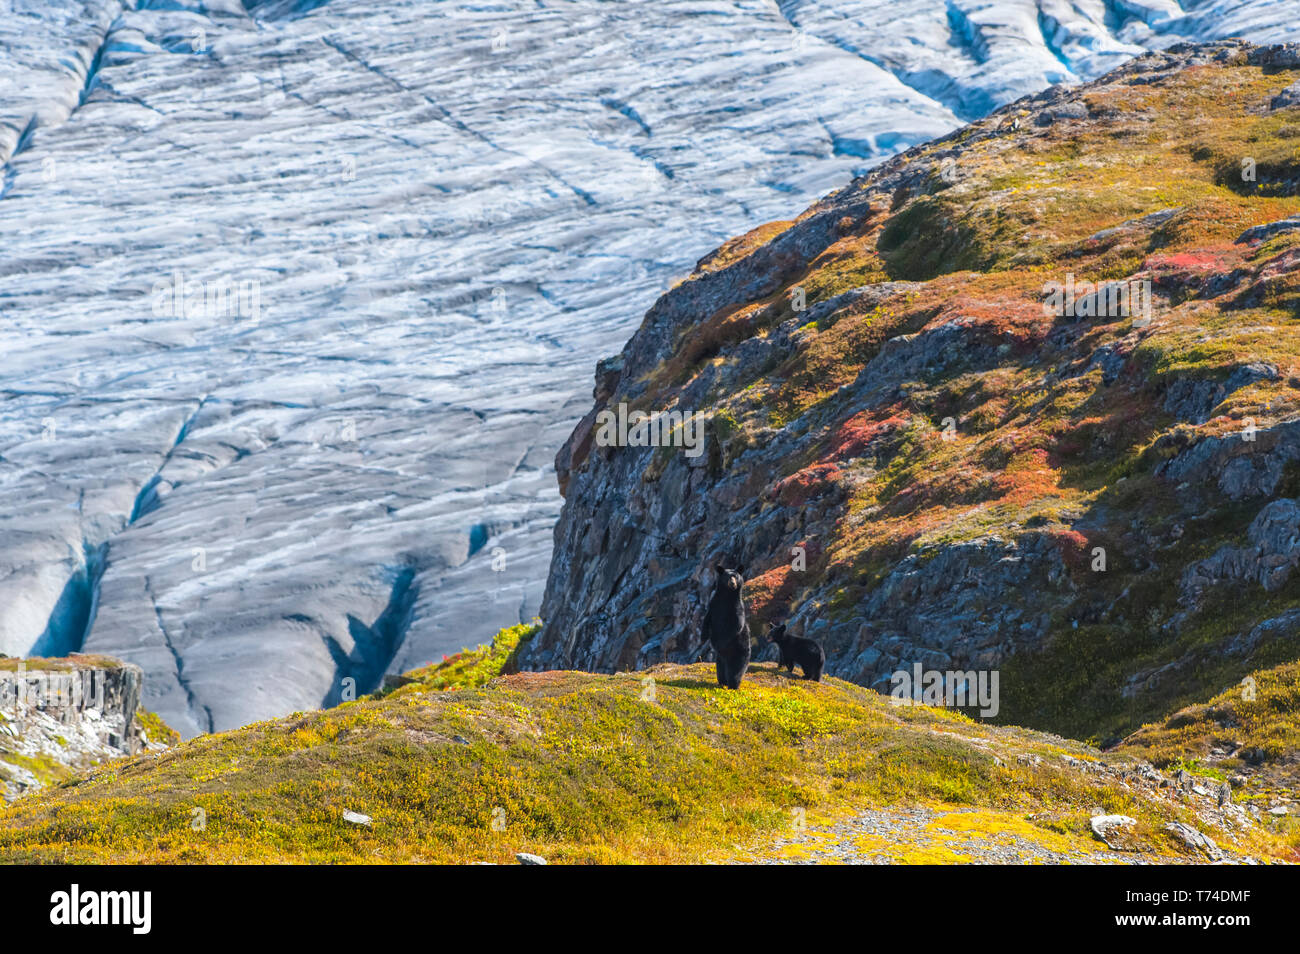 La vache à ours noir d'Amérique (Ursus americanus) est debout sur ses pattes arrière avec son cub à côté d'elle sur une colline avec la sortie Glacier en arrière-plan ... Banque D'Images